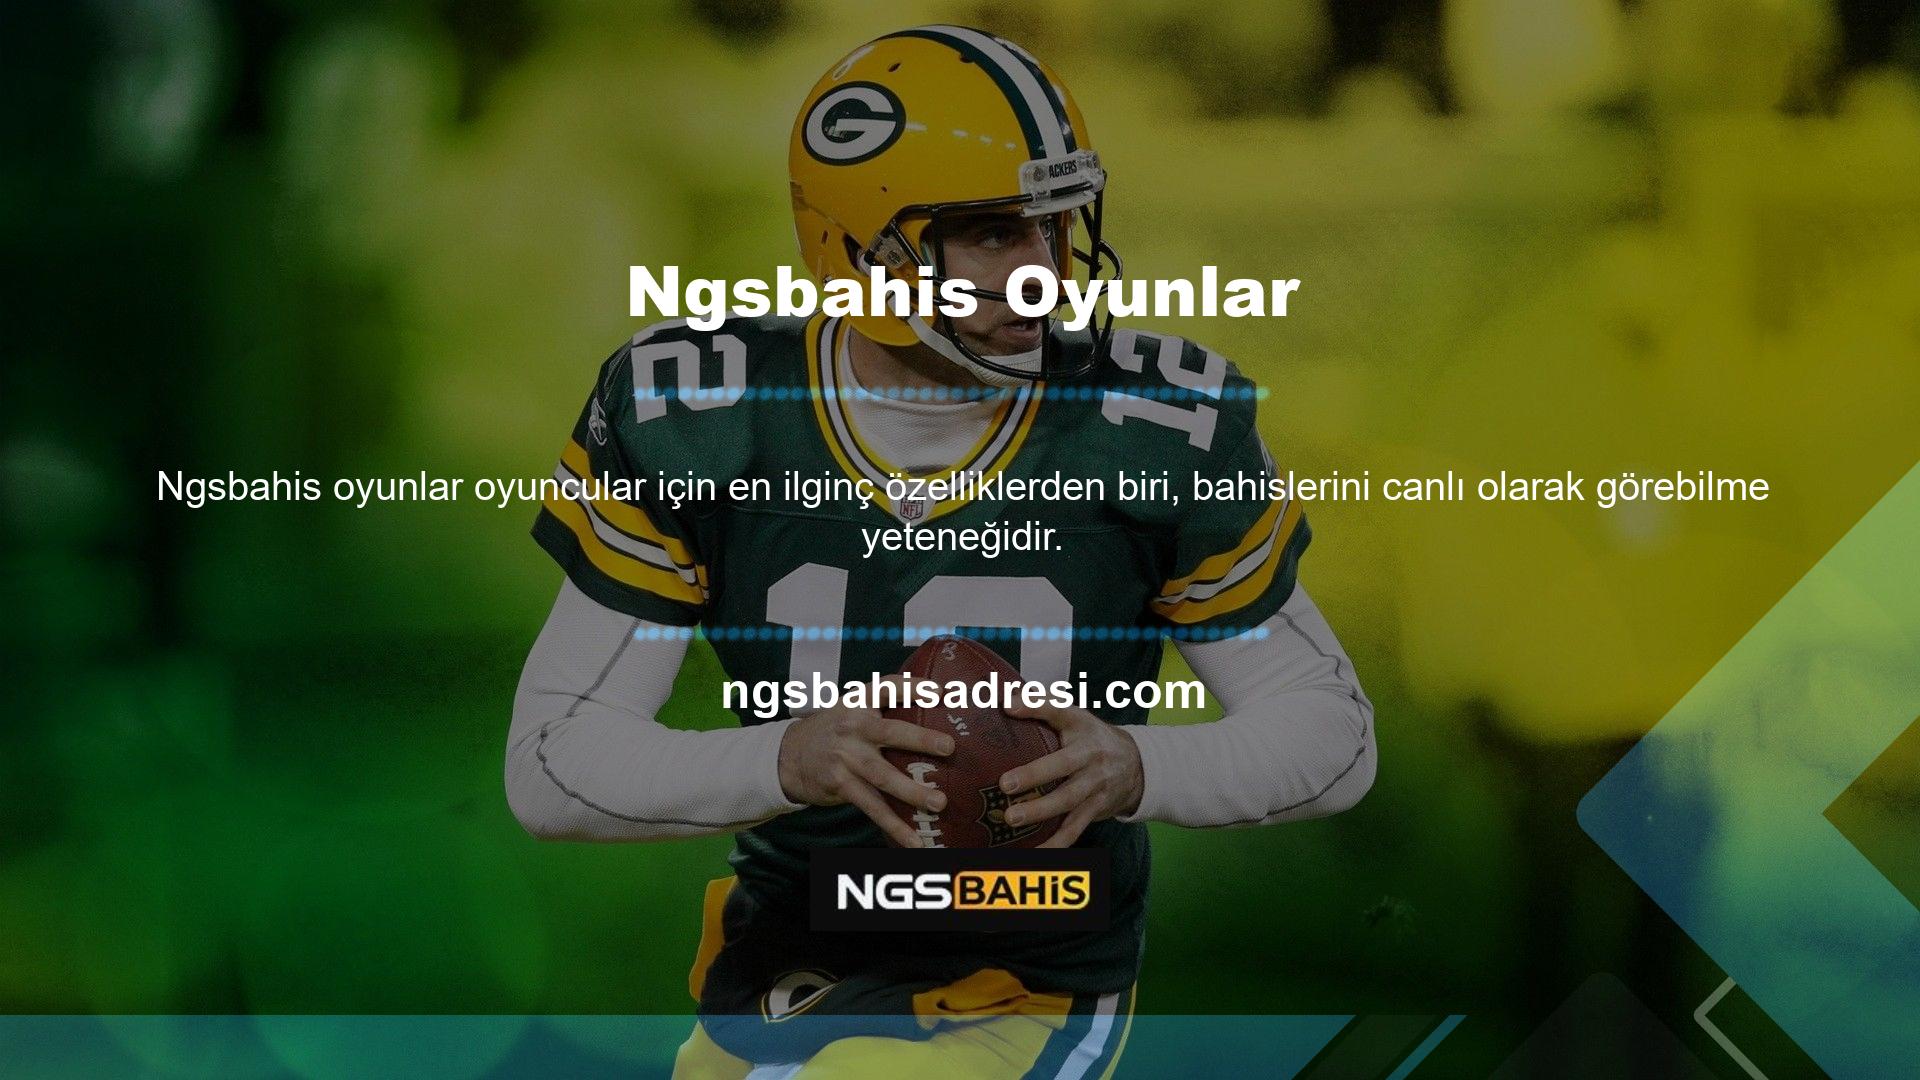 Ngsbahis bu konuda güçlü bir altyapıya sahip olup, Ngsbahis TV web sitesinde "Para Yatırma" adı verilen özel bir sistem kullanarak oynadığınız her maçı izleme ve takip etme imkanını sizlere sunmaktadır